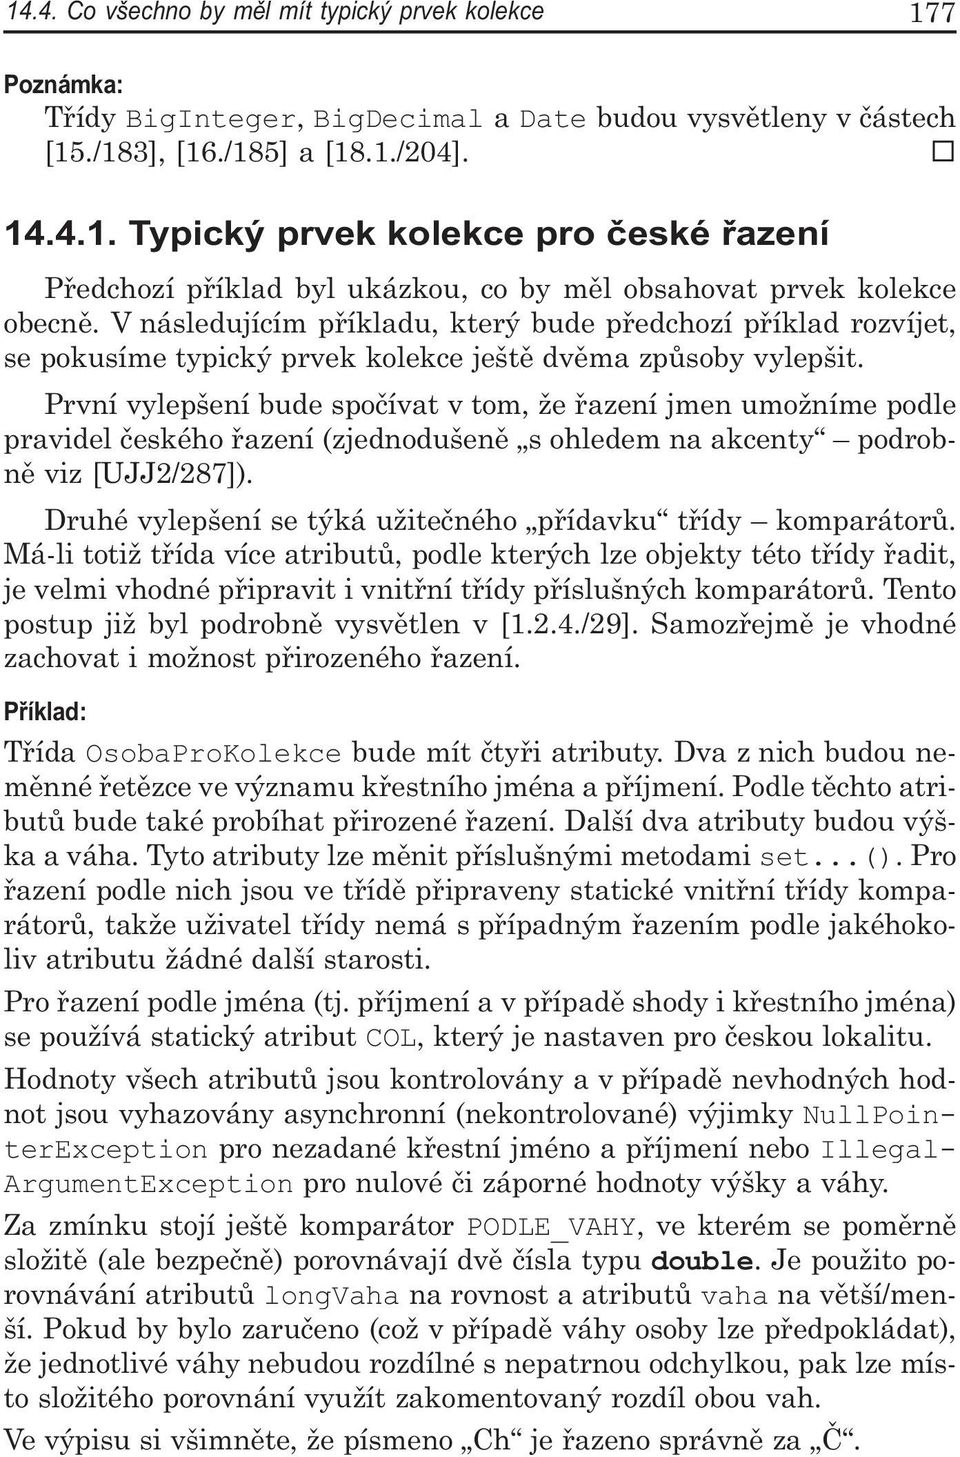 První vylepšení bude spočívat v tom, že řazení jmen umožníme podle pravidel českého řazení (zjednodušeně s ohledem na akcenty podrobně viz [UJJ2/287).